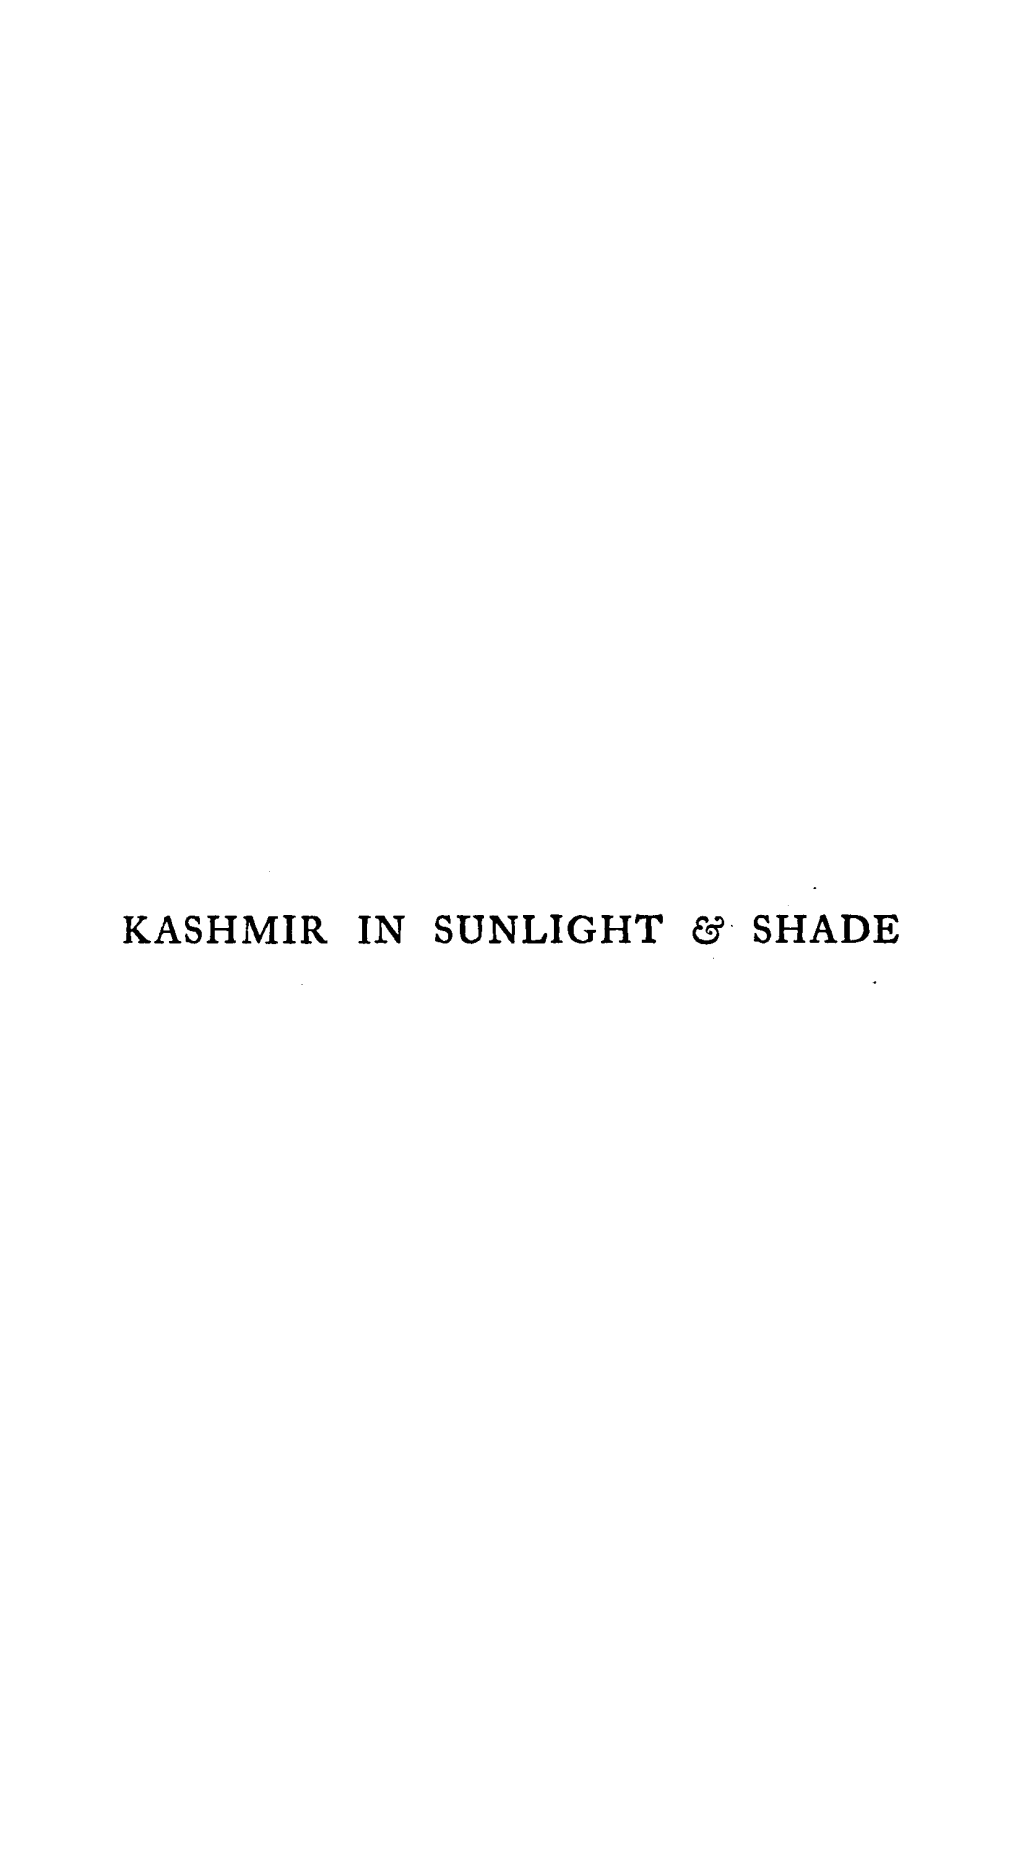 Kashmir in Sunlight & Shade